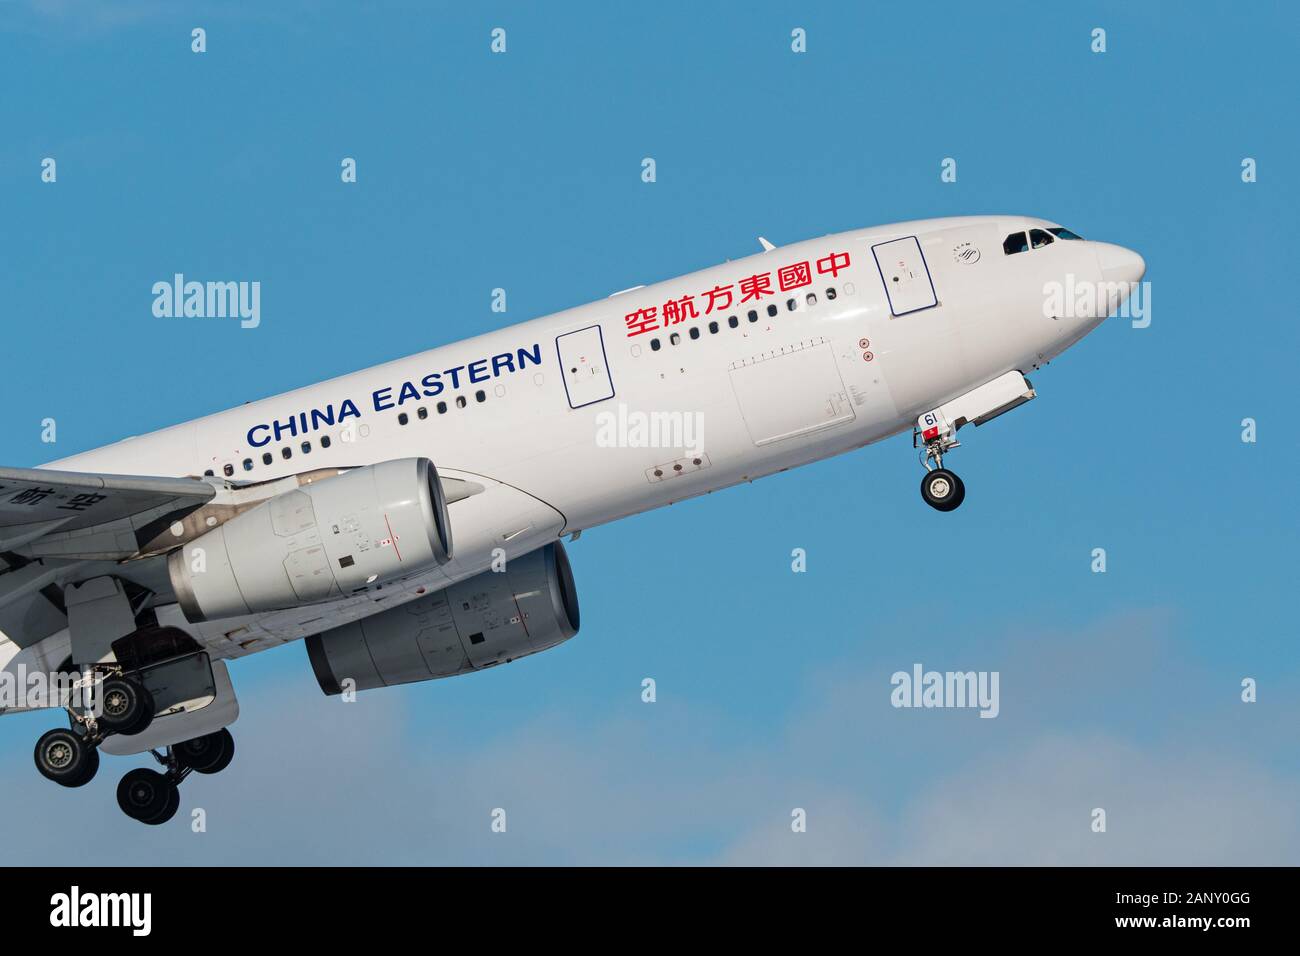 China Eastern Airlines avión Airbus A330 (A330-200 de fuselaje ancho) jet airliner airborne después del despegue Foto de stock